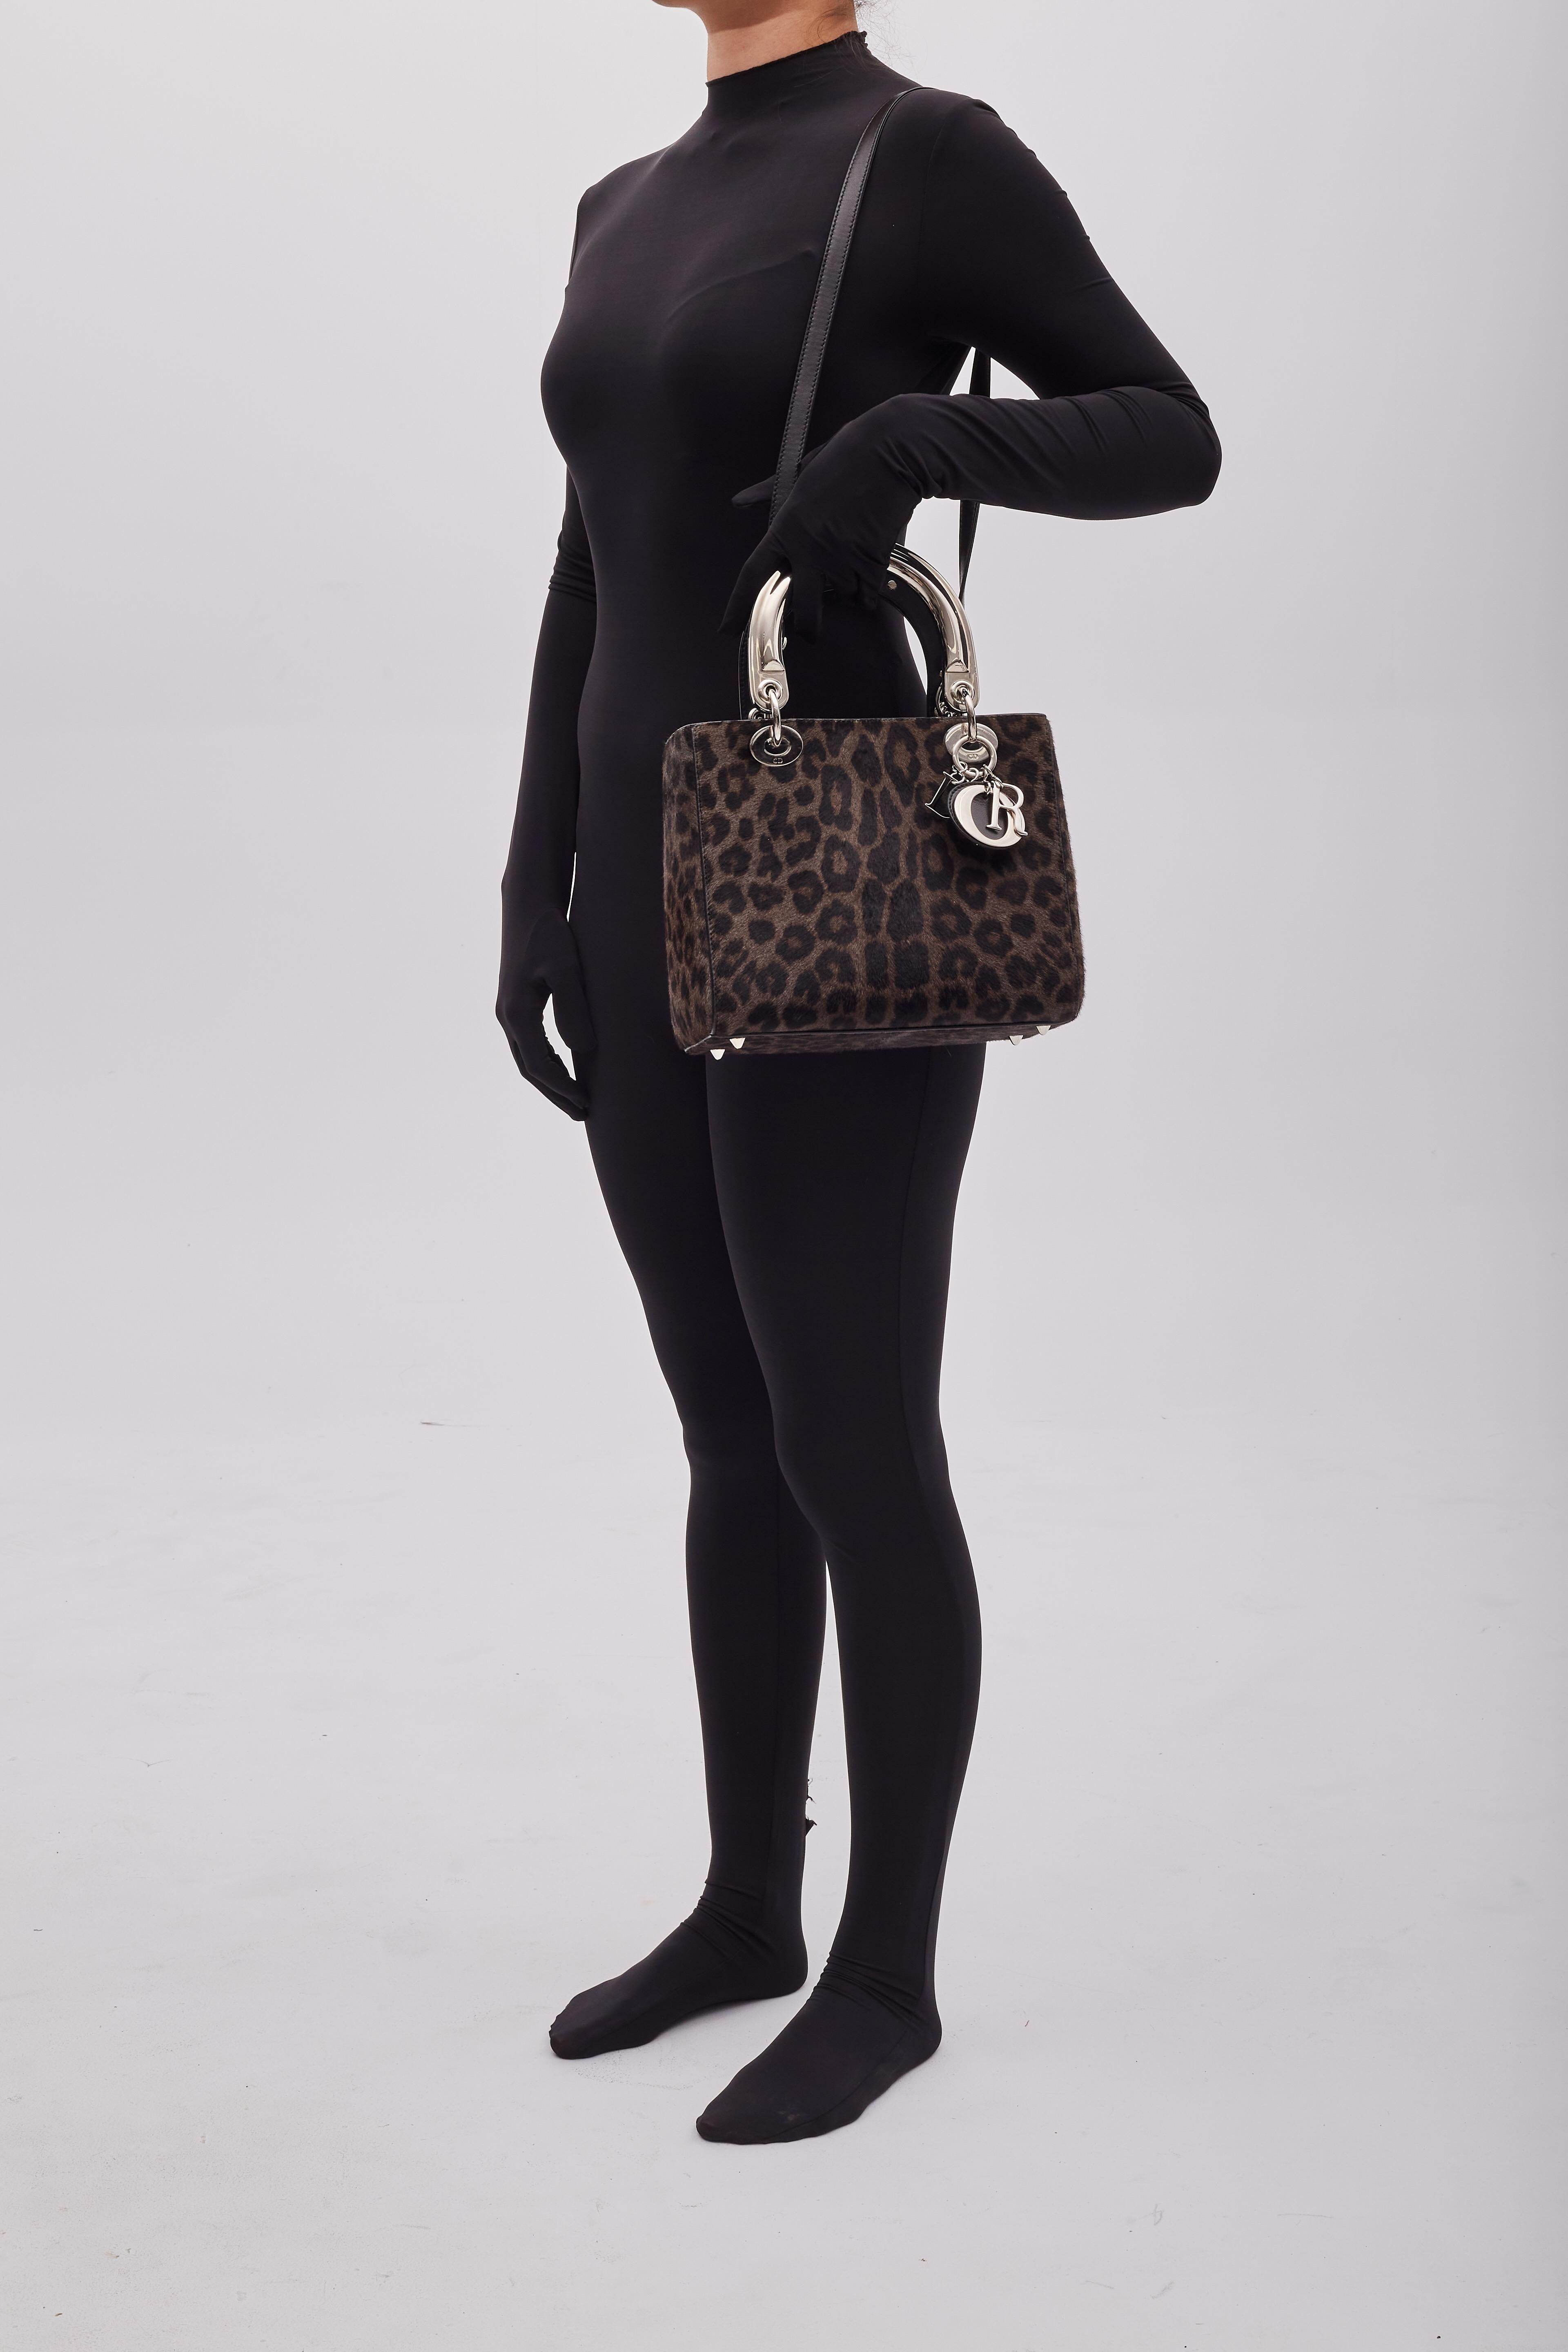 Ce sac Christian Dior est issu de la collection 2013 de Raf Simons. Le sac est en poils de poney marron avec un imprimé léopard, des ferrures argentées, des pieds de protection à la base, deux poignées plates sur le dessus et une bandoulière